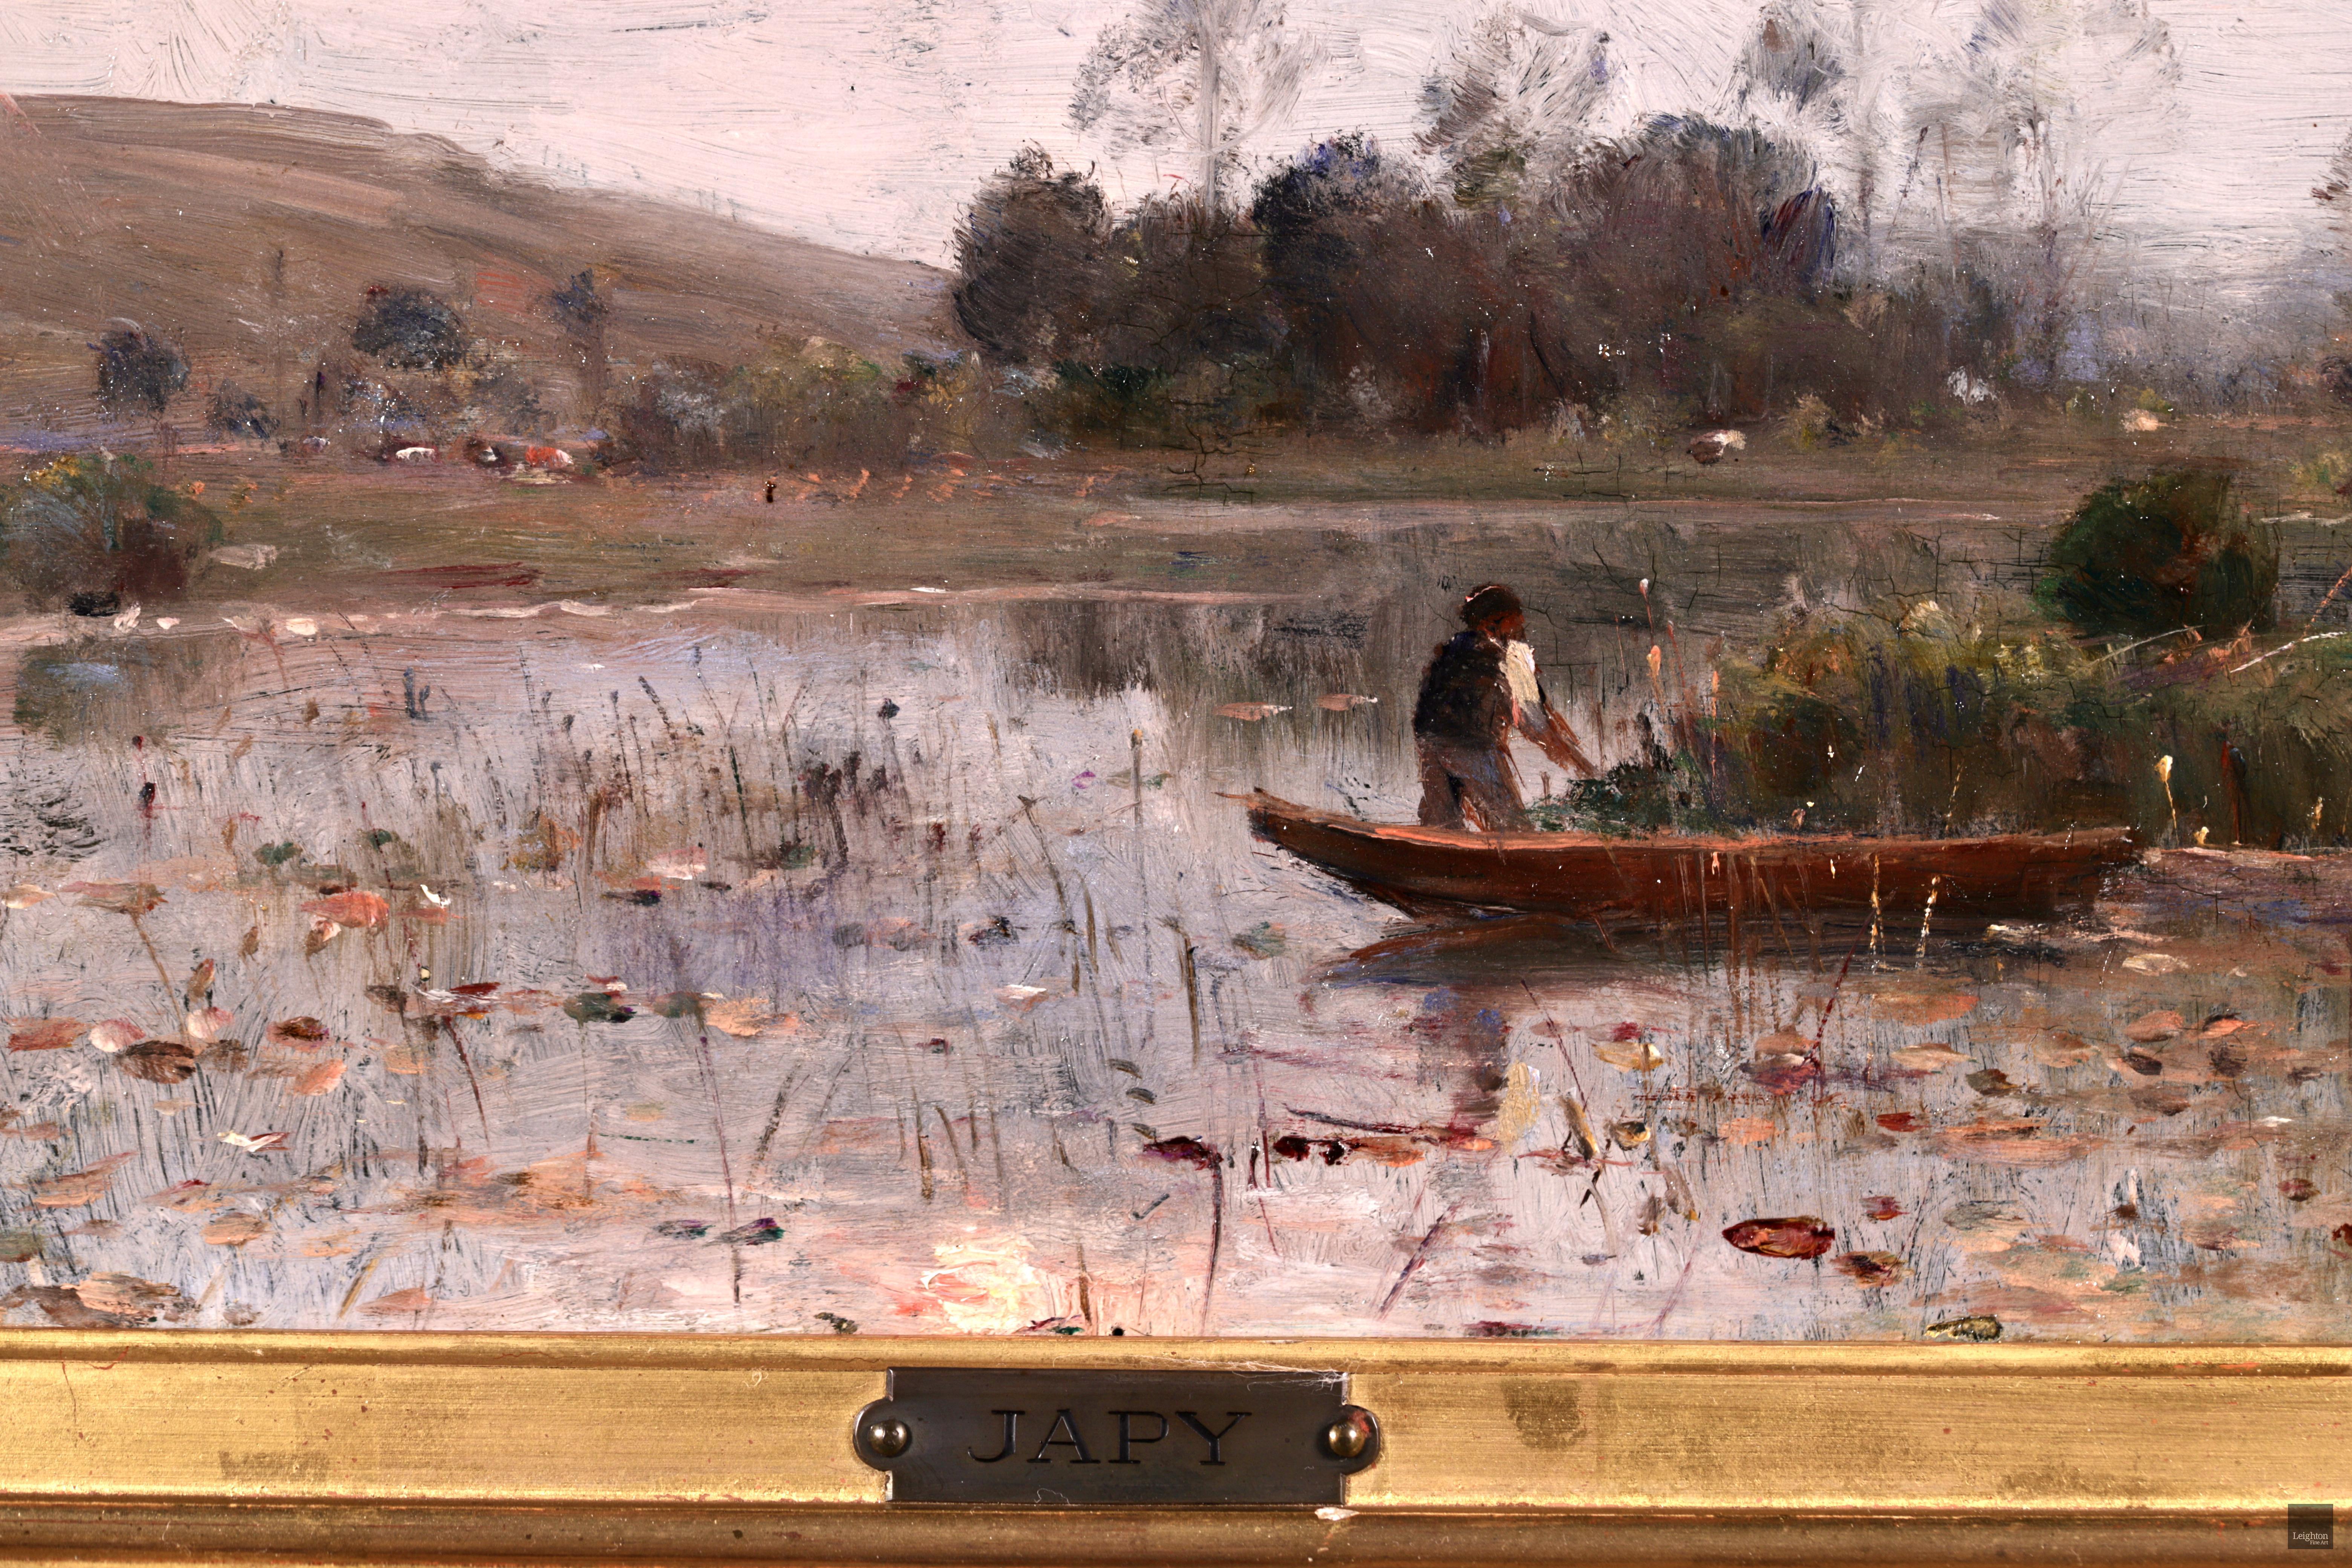 Pecheur sur une riviere - Barbizon Oil, River Landscape by Louis Aime Japy - Barbizon School Painting by Louis Aimé Japy